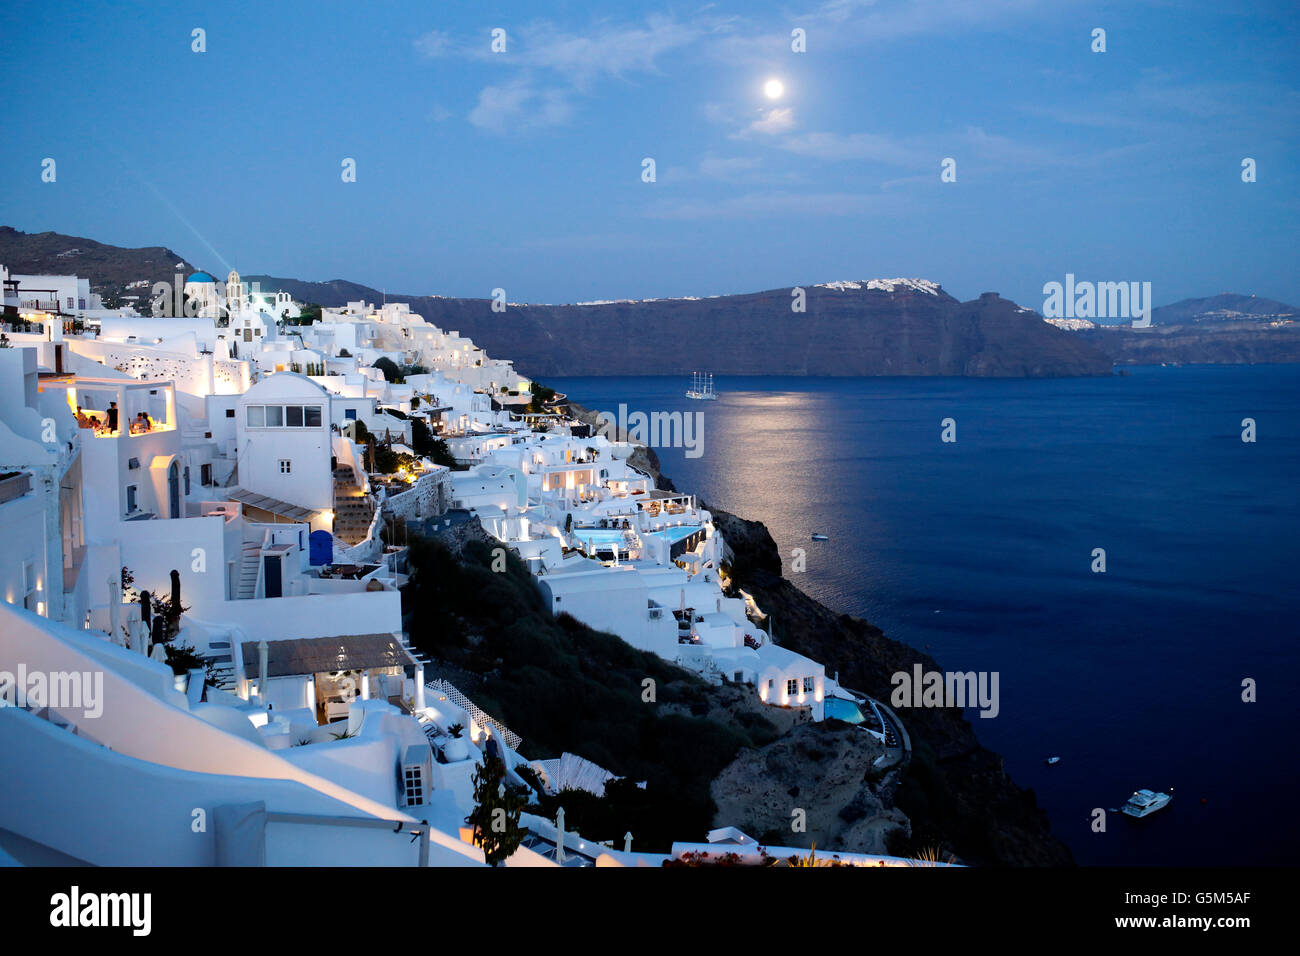 Pleine lune sur l'île de Santorin dans les Cyclades et la phosphorescence (dans la mer), Grèce Banque D'Images